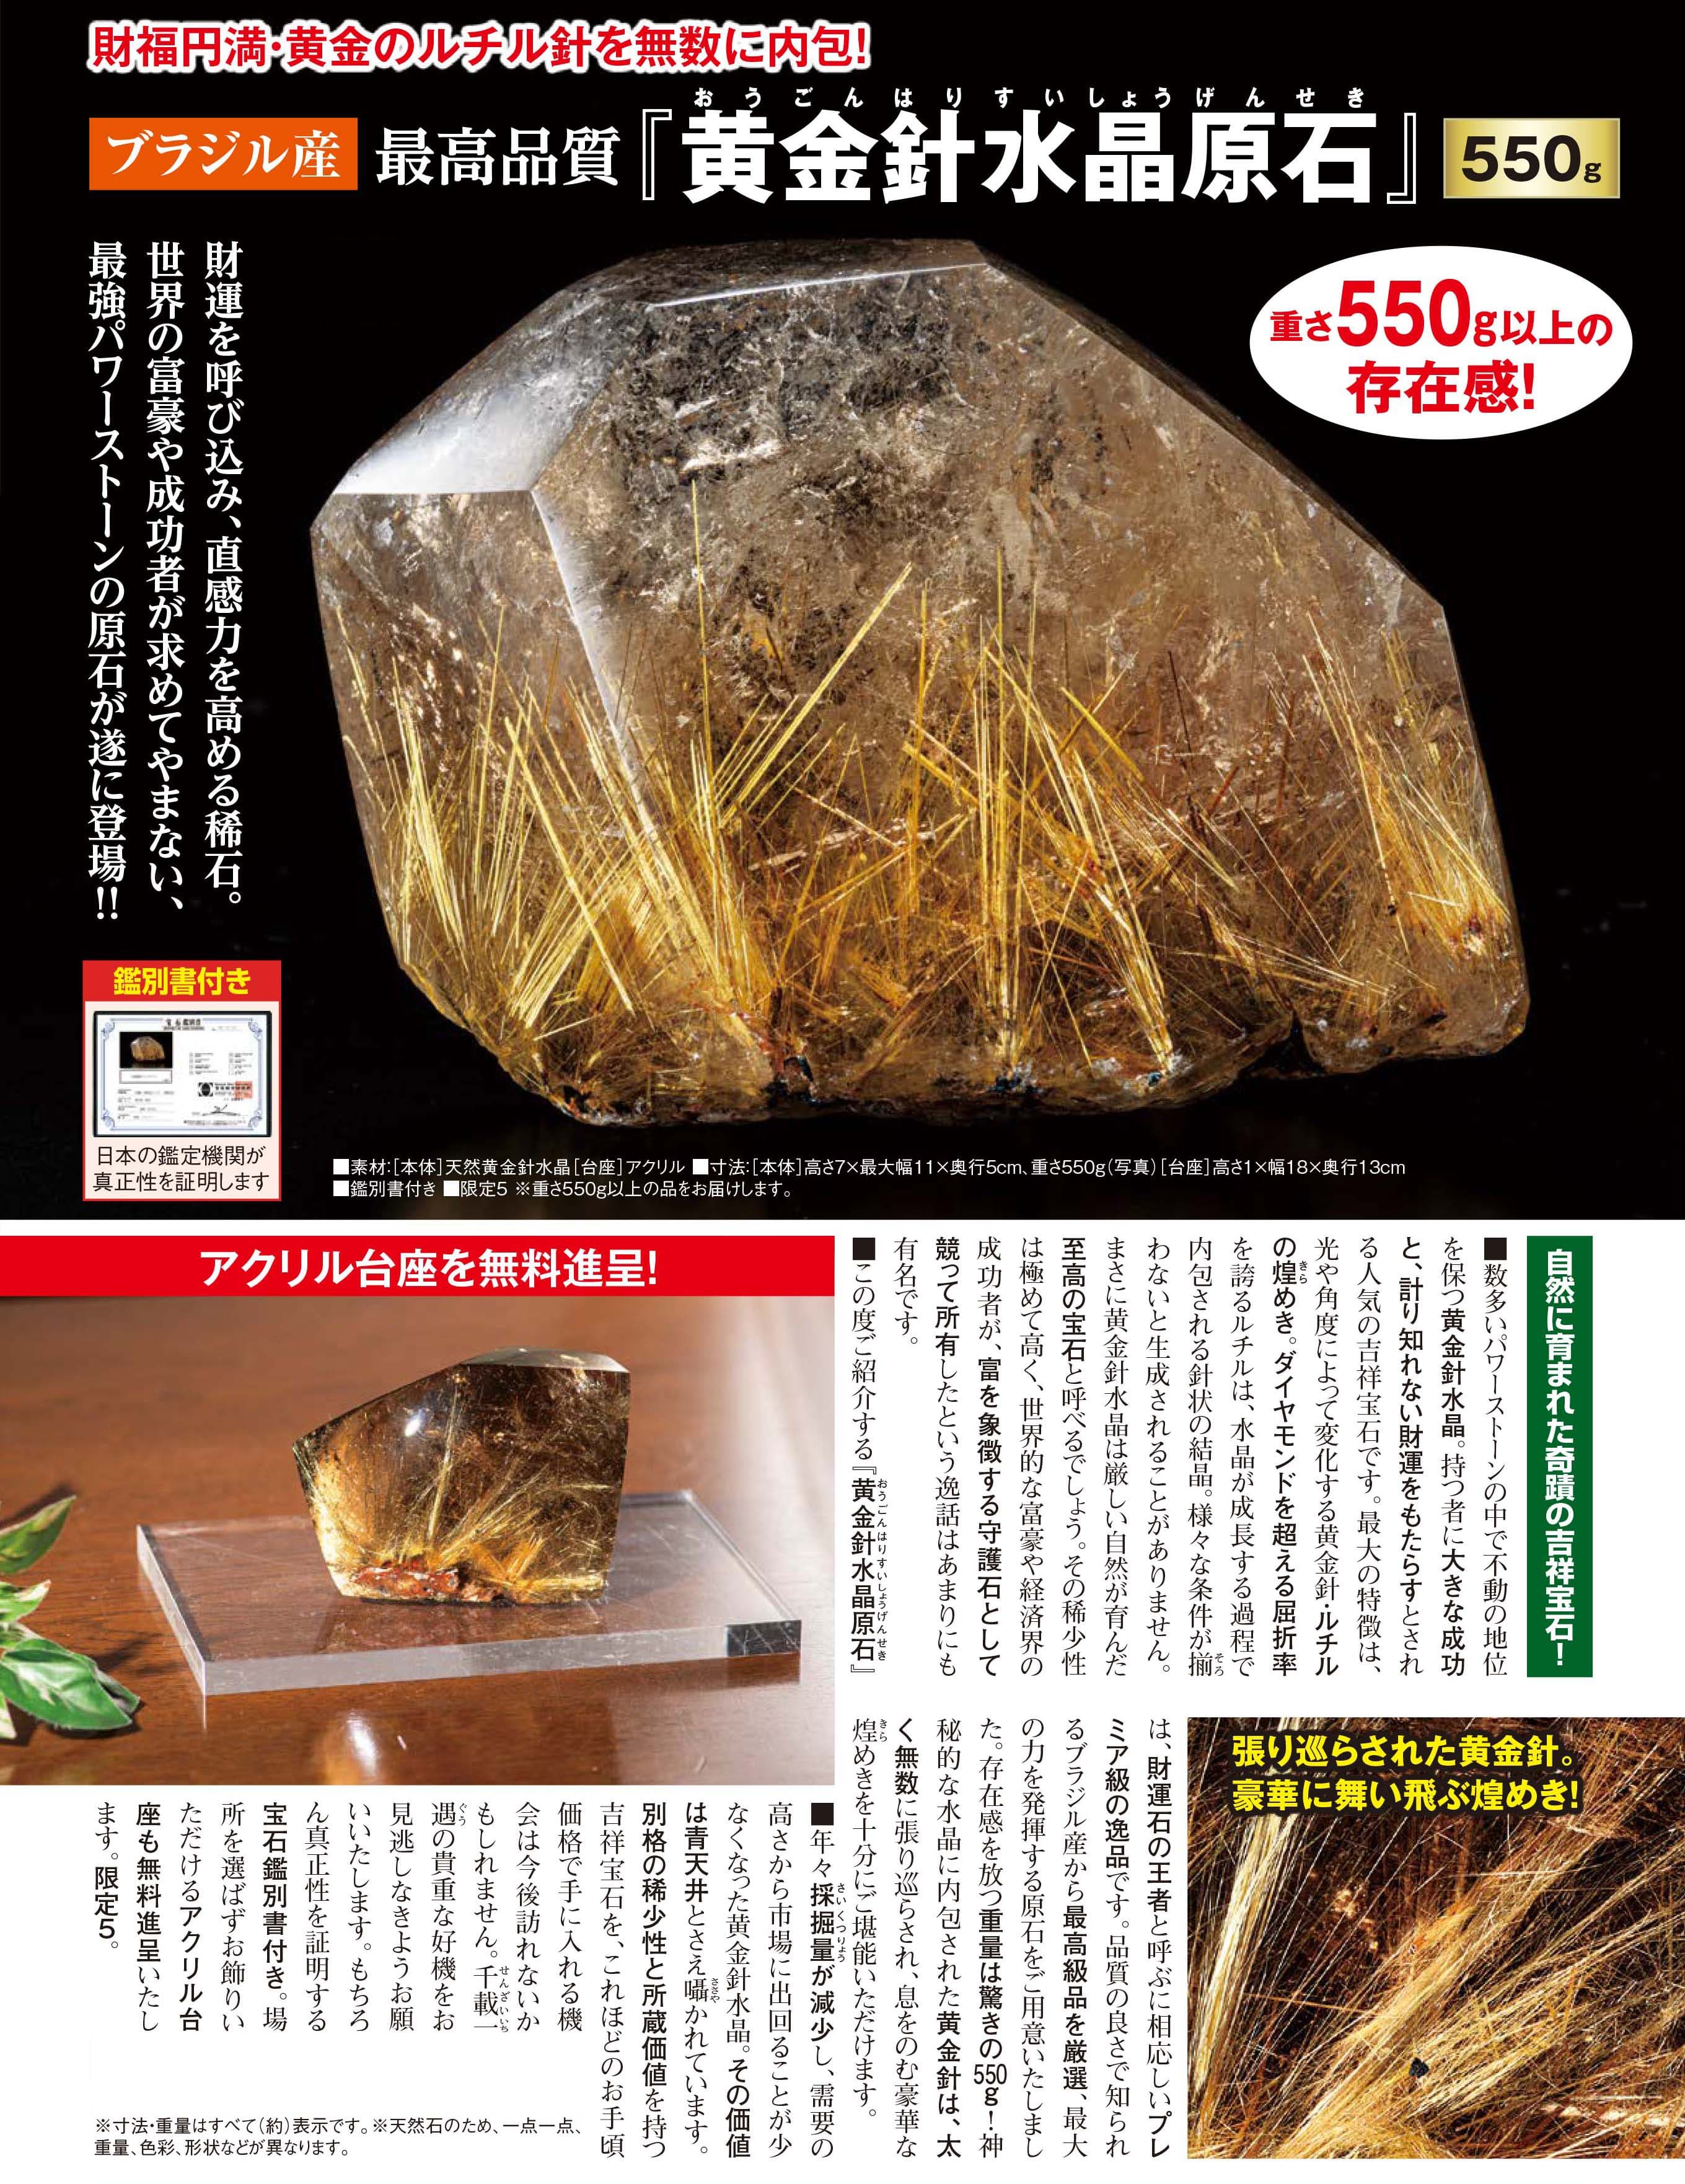 ブラジル産『黄金針水晶原石』 | 東京書芸館公式ウェブサイト - 【東京 